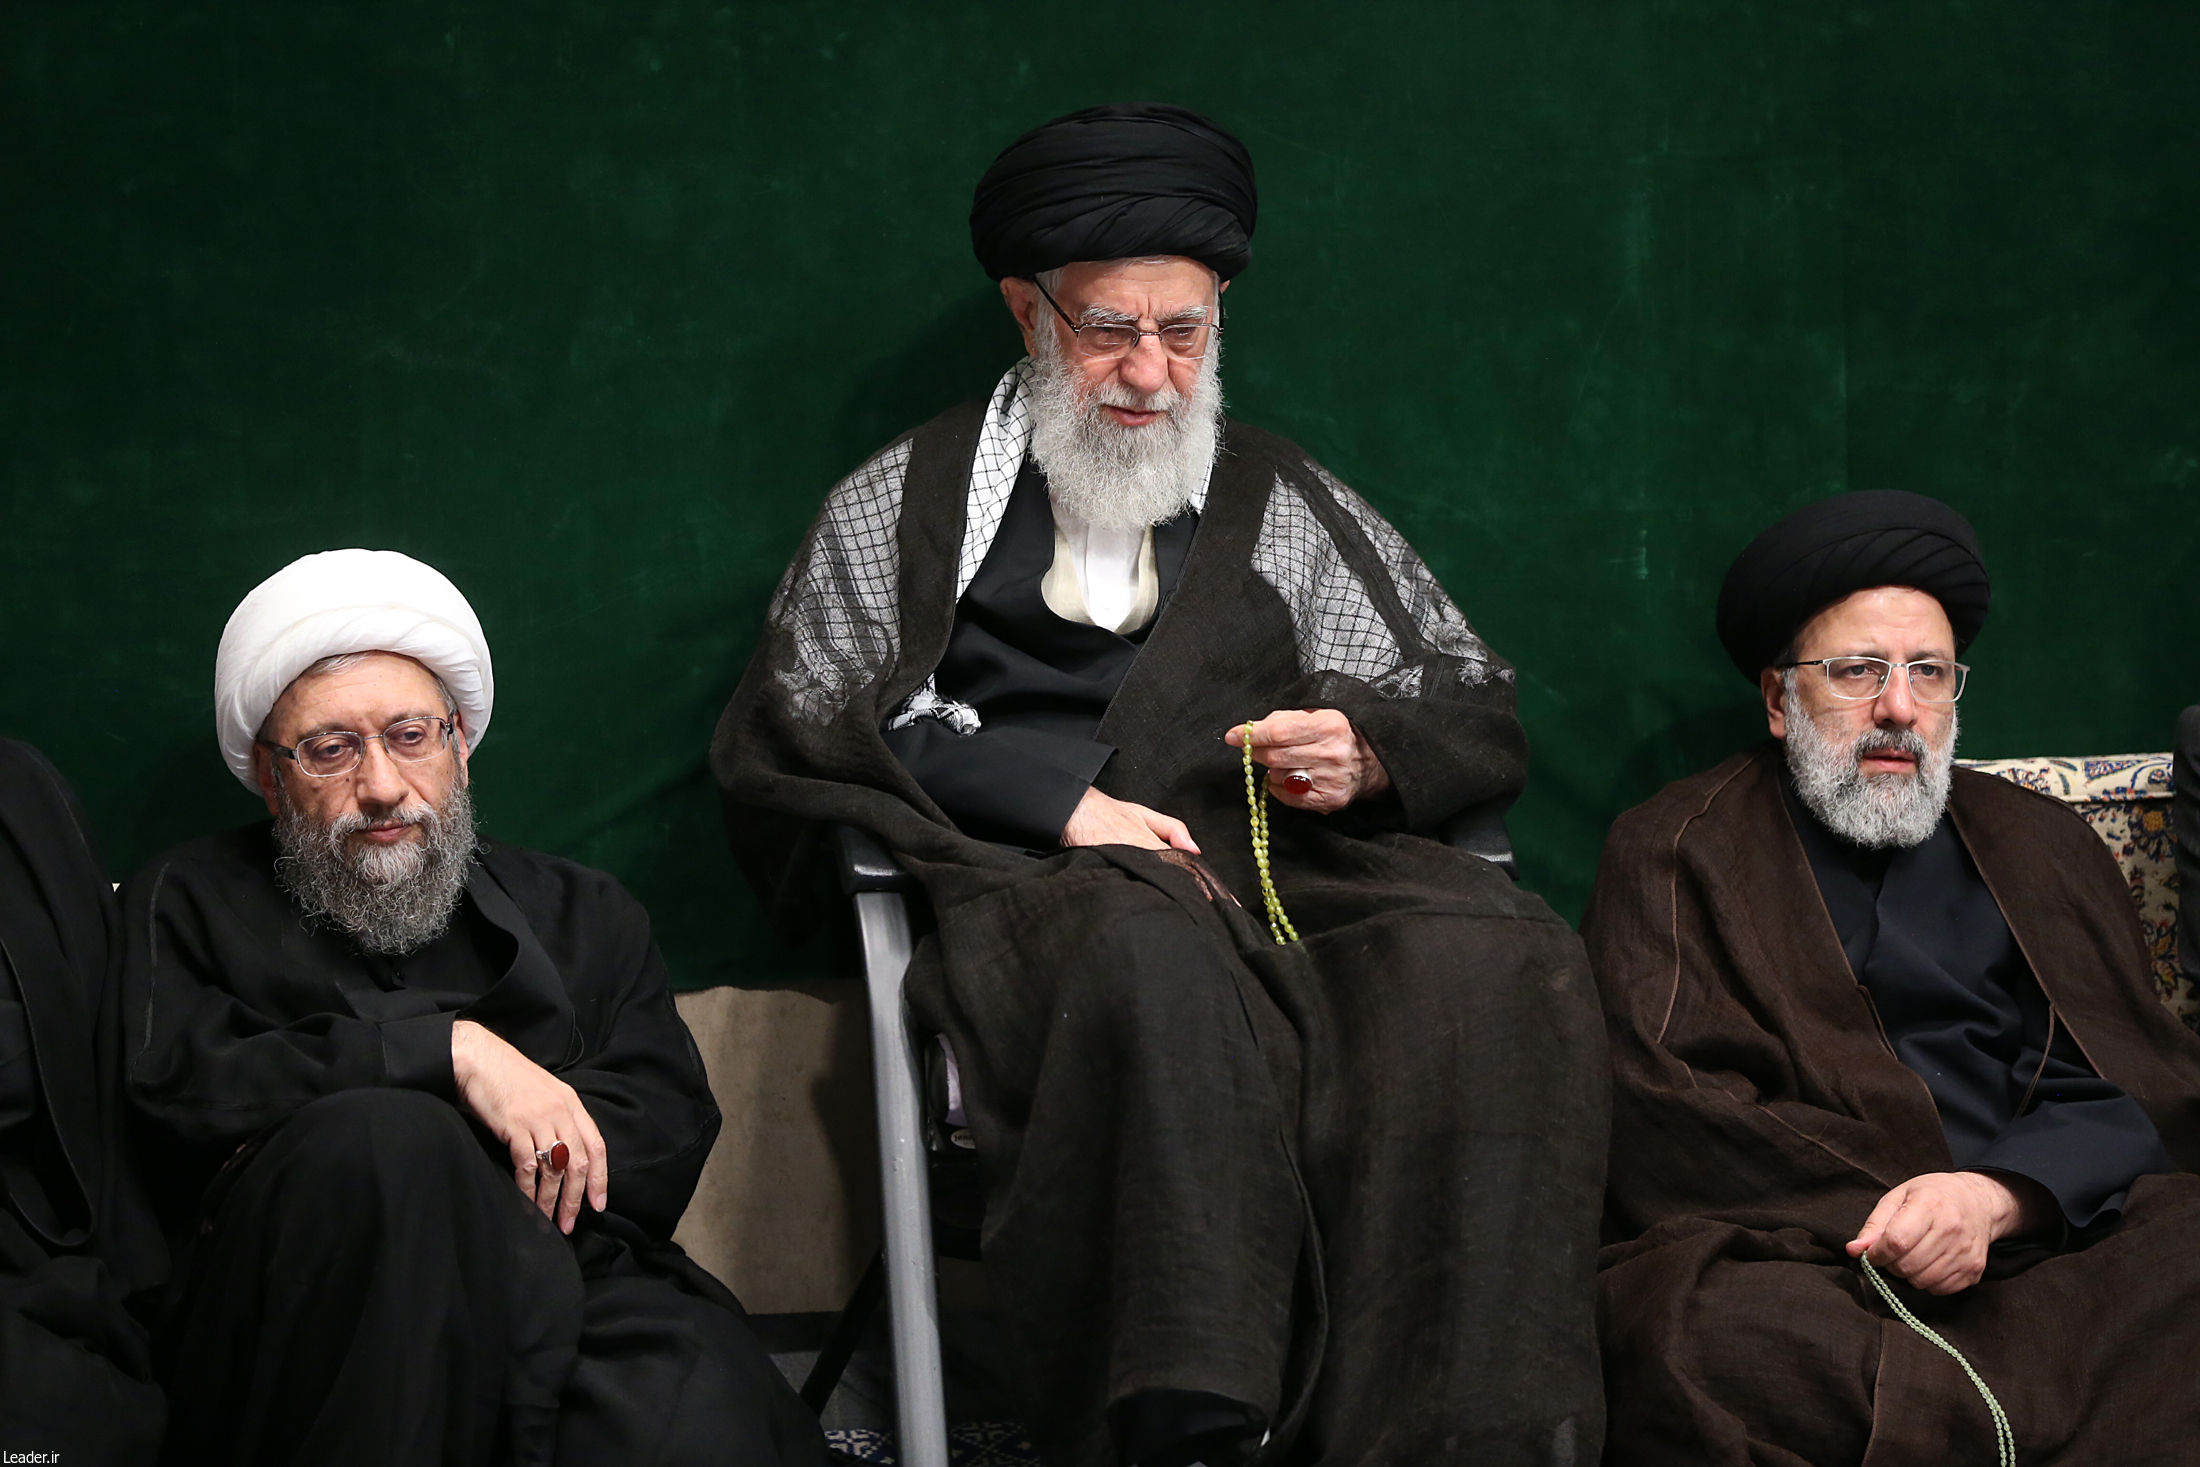 برگزاری مراسم عزاداری تاسوعای حسینی با حضور رهبر معظم انقلاب + عکس